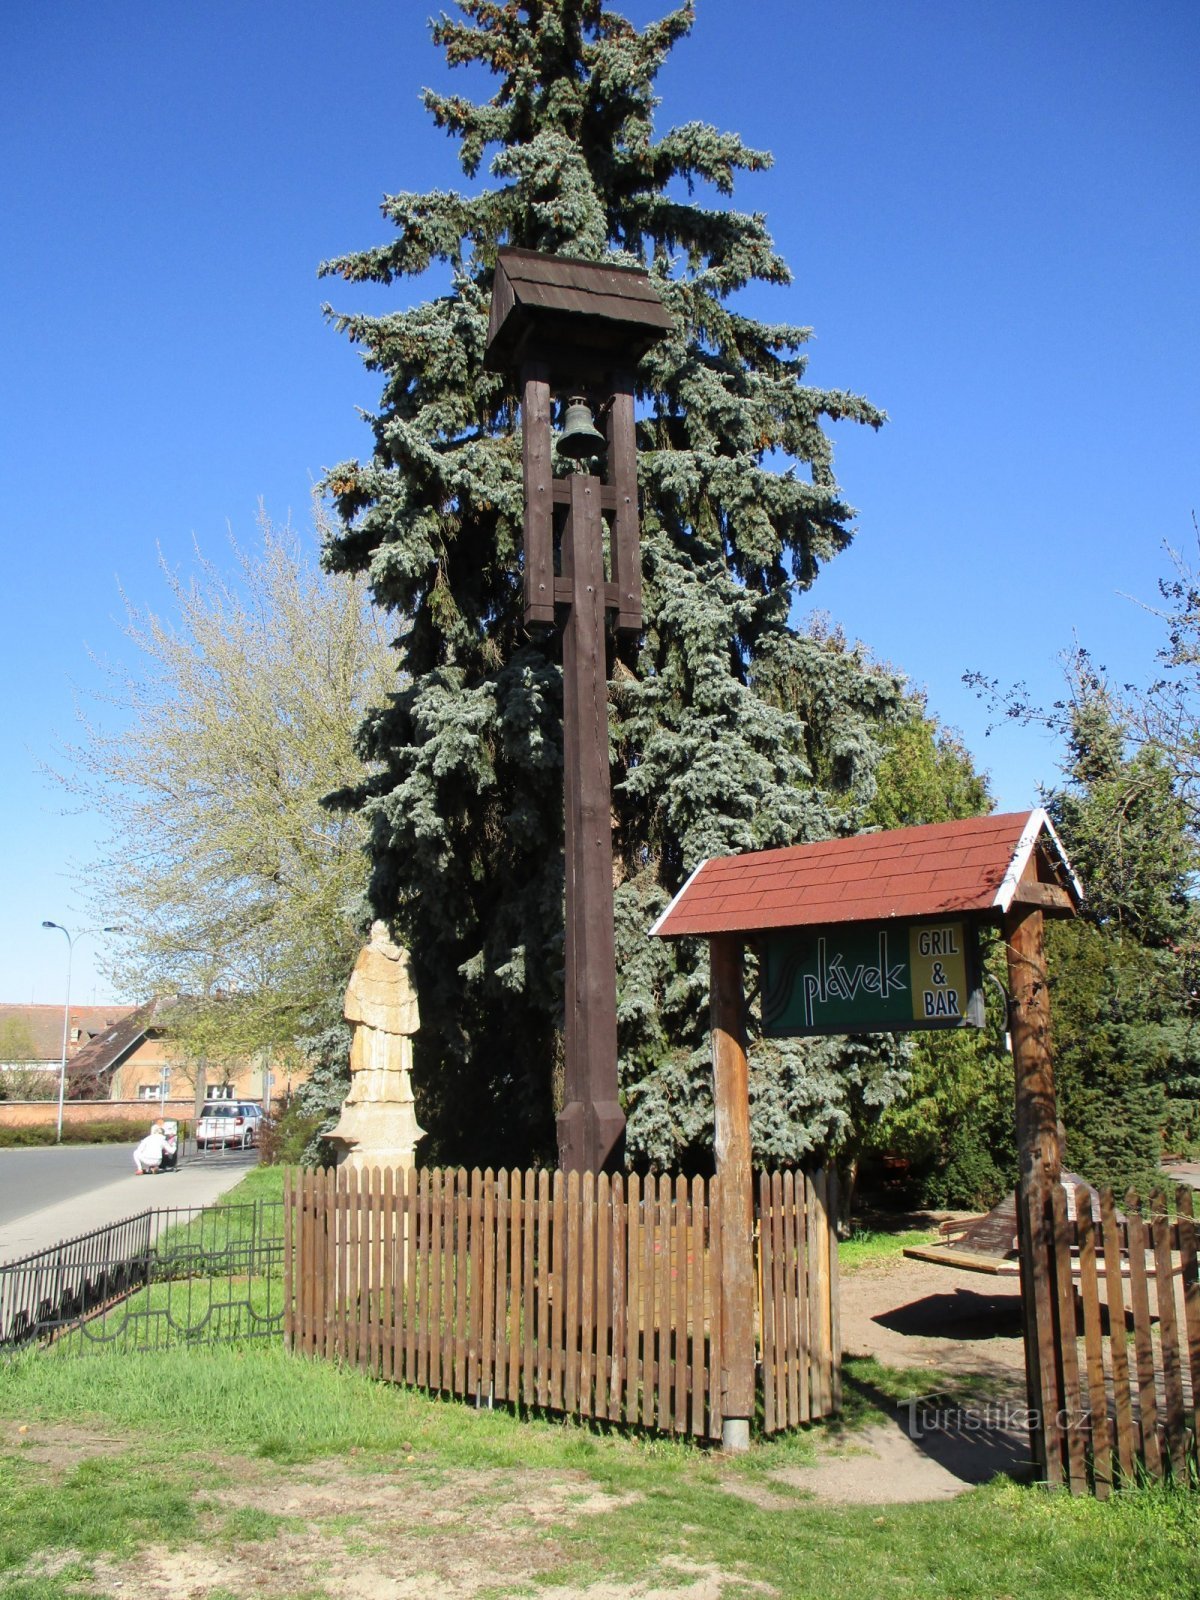 Glockenturm in Hrázka (Hradec Králové, 8.4.2020. April XNUMX)